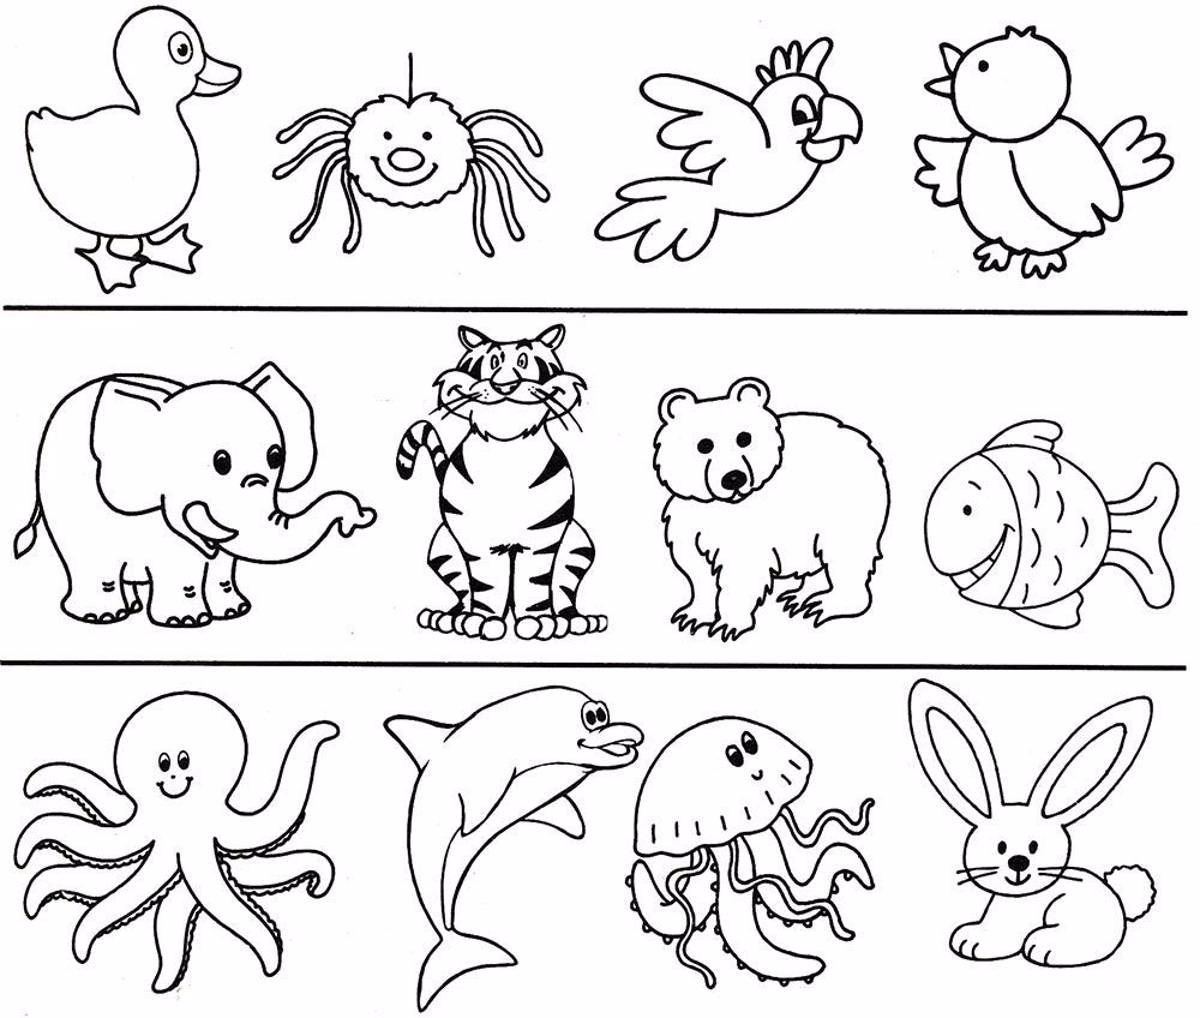 Развитие речи лохматые и крылатые. Раскраски для малышей. Раскраски животные для детей. Раскраскаидля малышей. Раскраски длы я малышей.